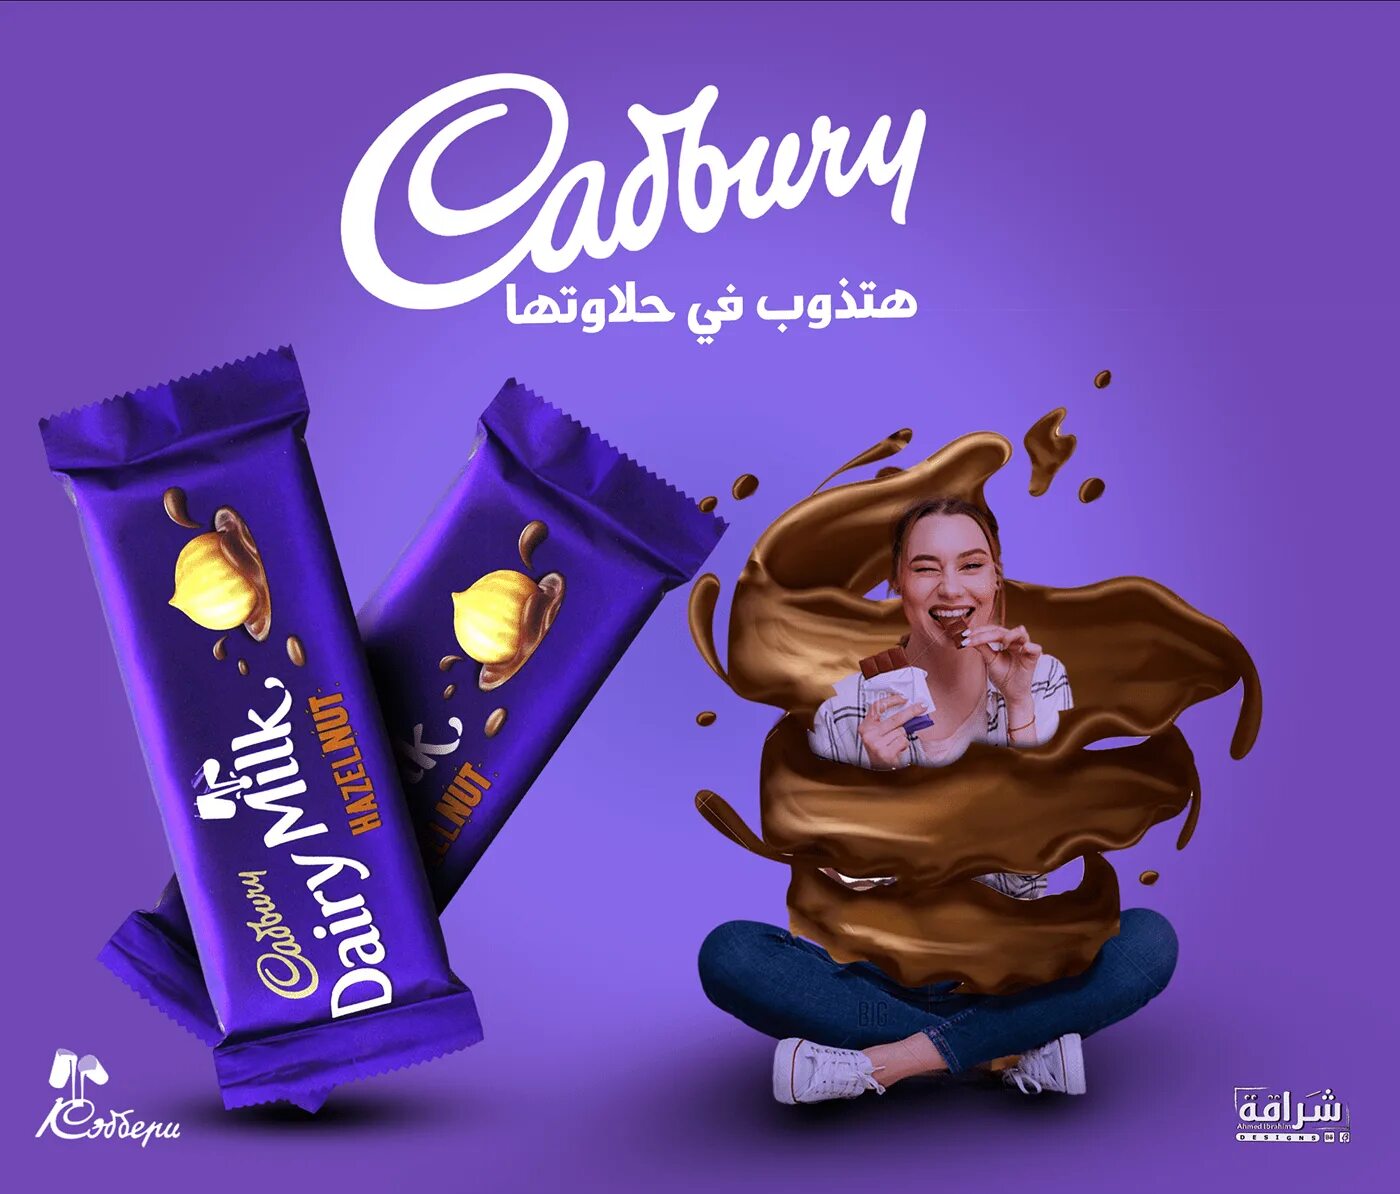 Рекламная шоколадка. Cadbury шоколад. Реклама Кэдбери. Реклама шоколад Кэдбери. Cadbury шоколад реклама.